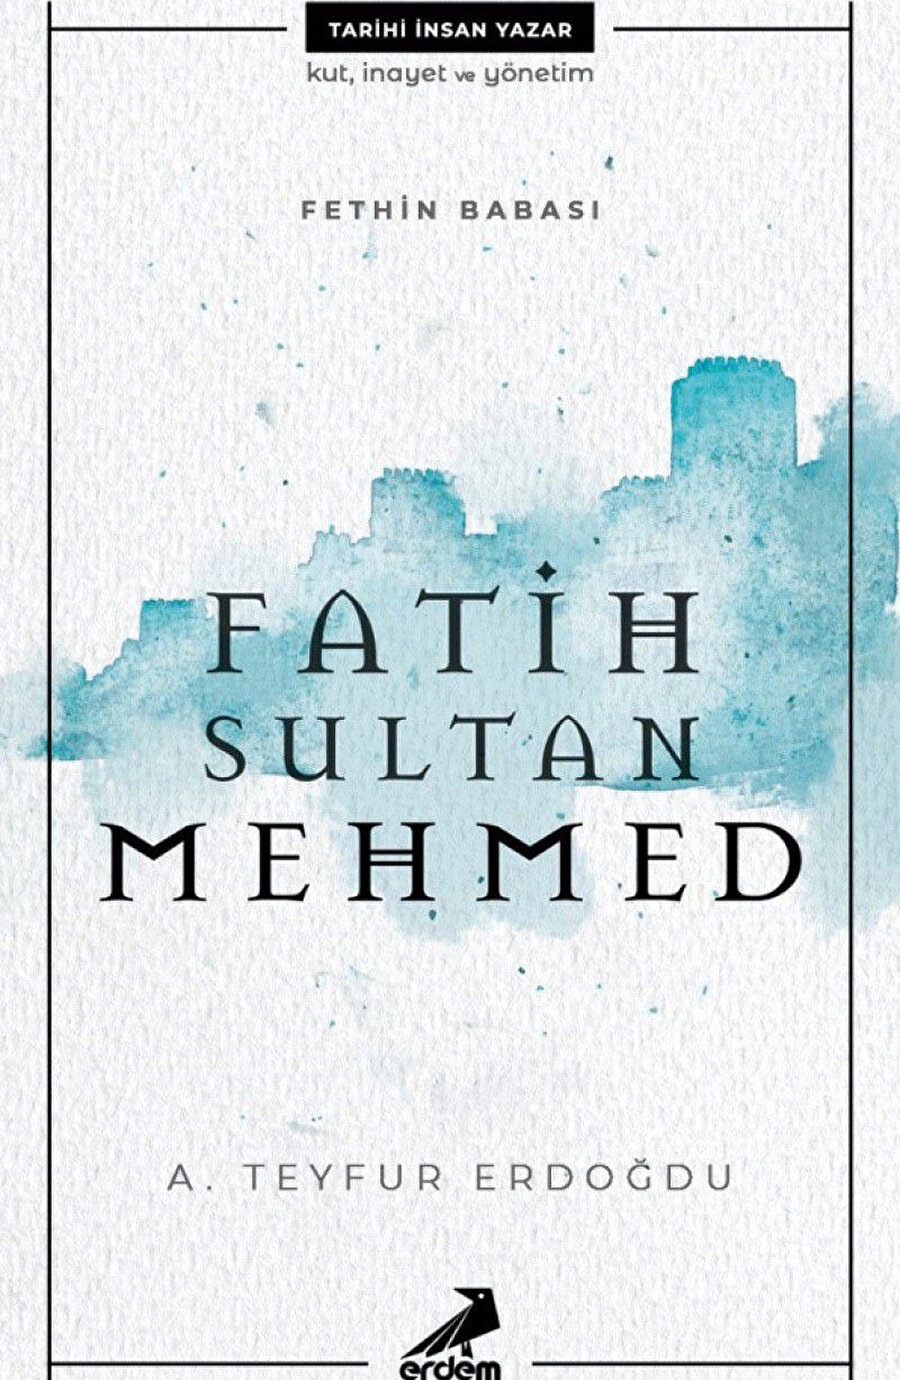 Doç Dr. A. Teyfur Erdoğdu'nun kitabı Fatih Sultan Mehmed